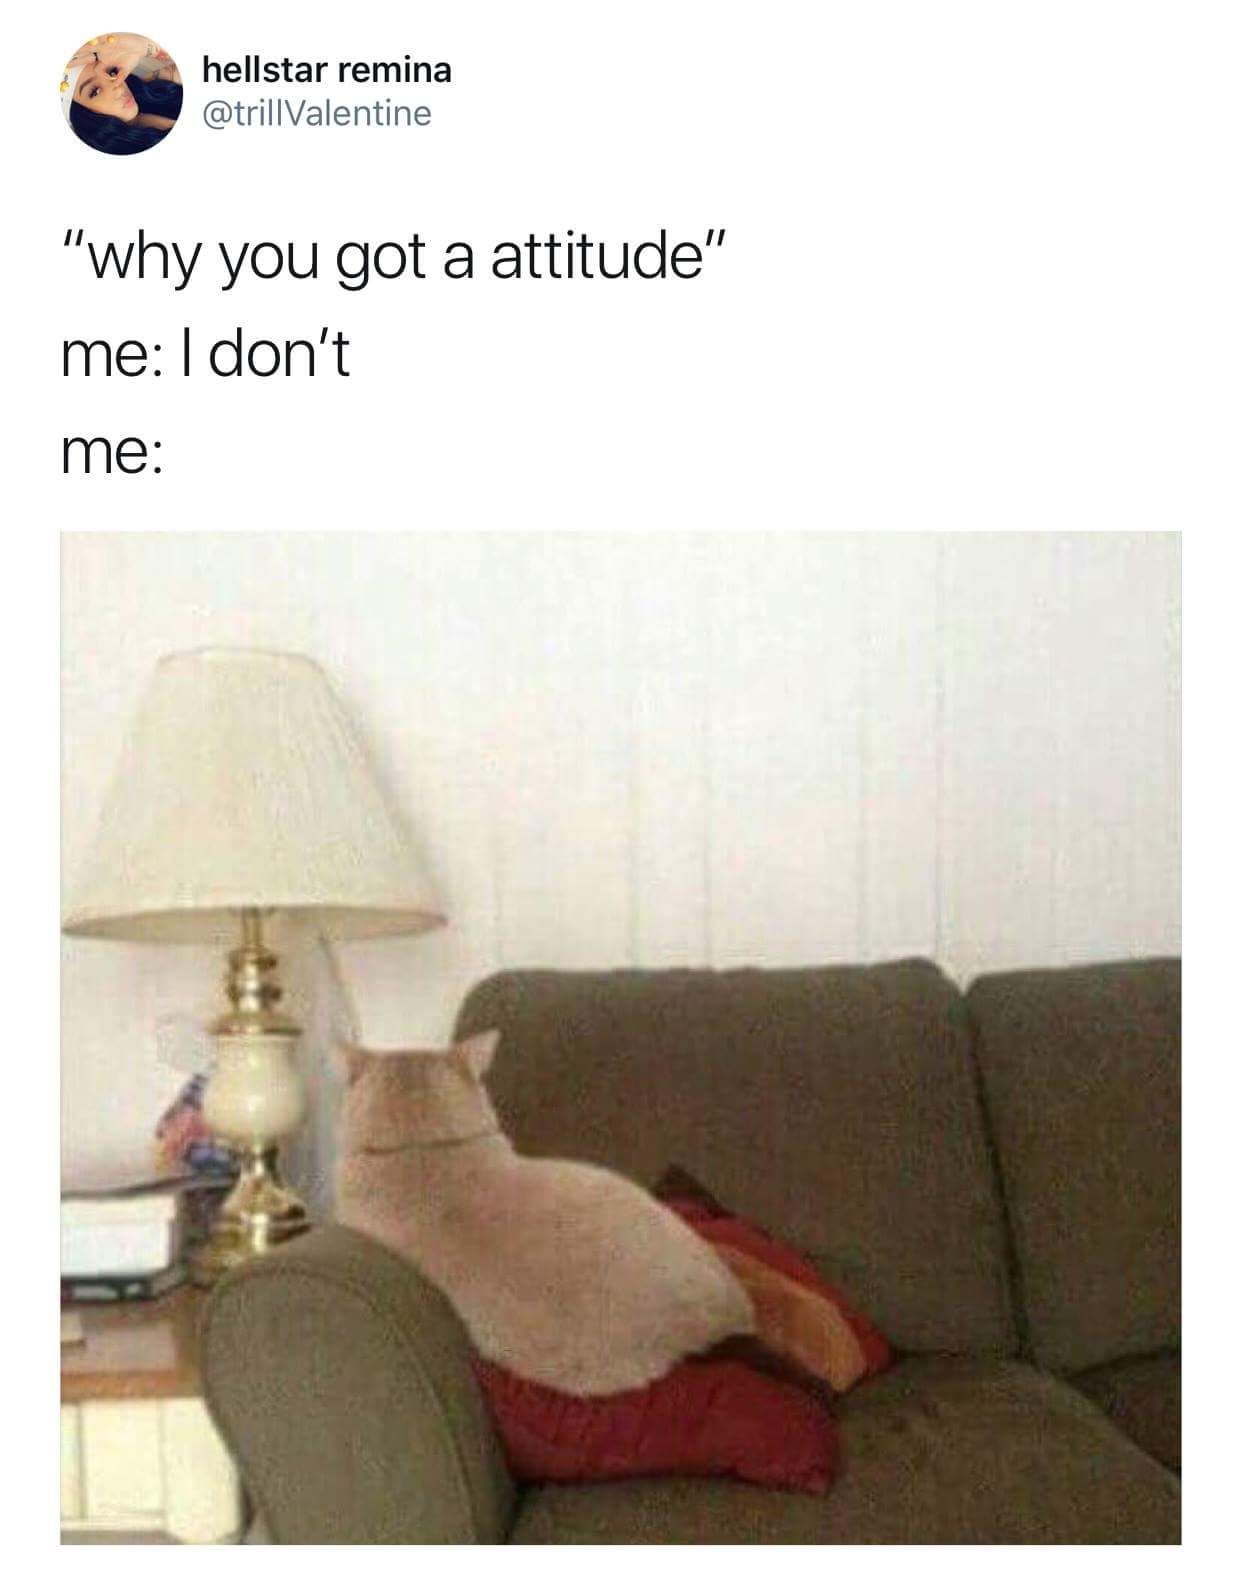 No attitude